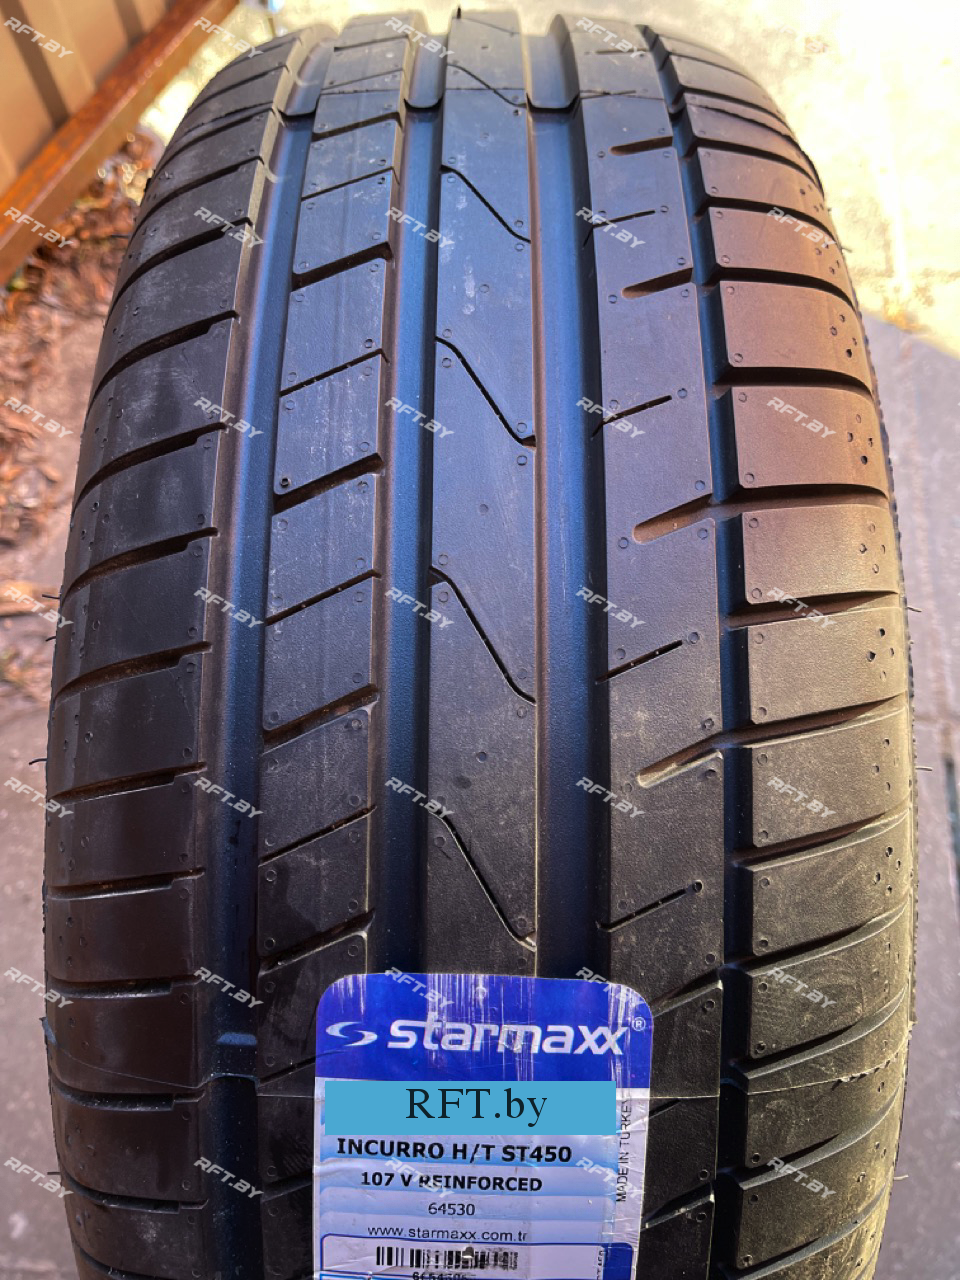 Starmaxx Incurro H/T ST450 255/60R18 112V